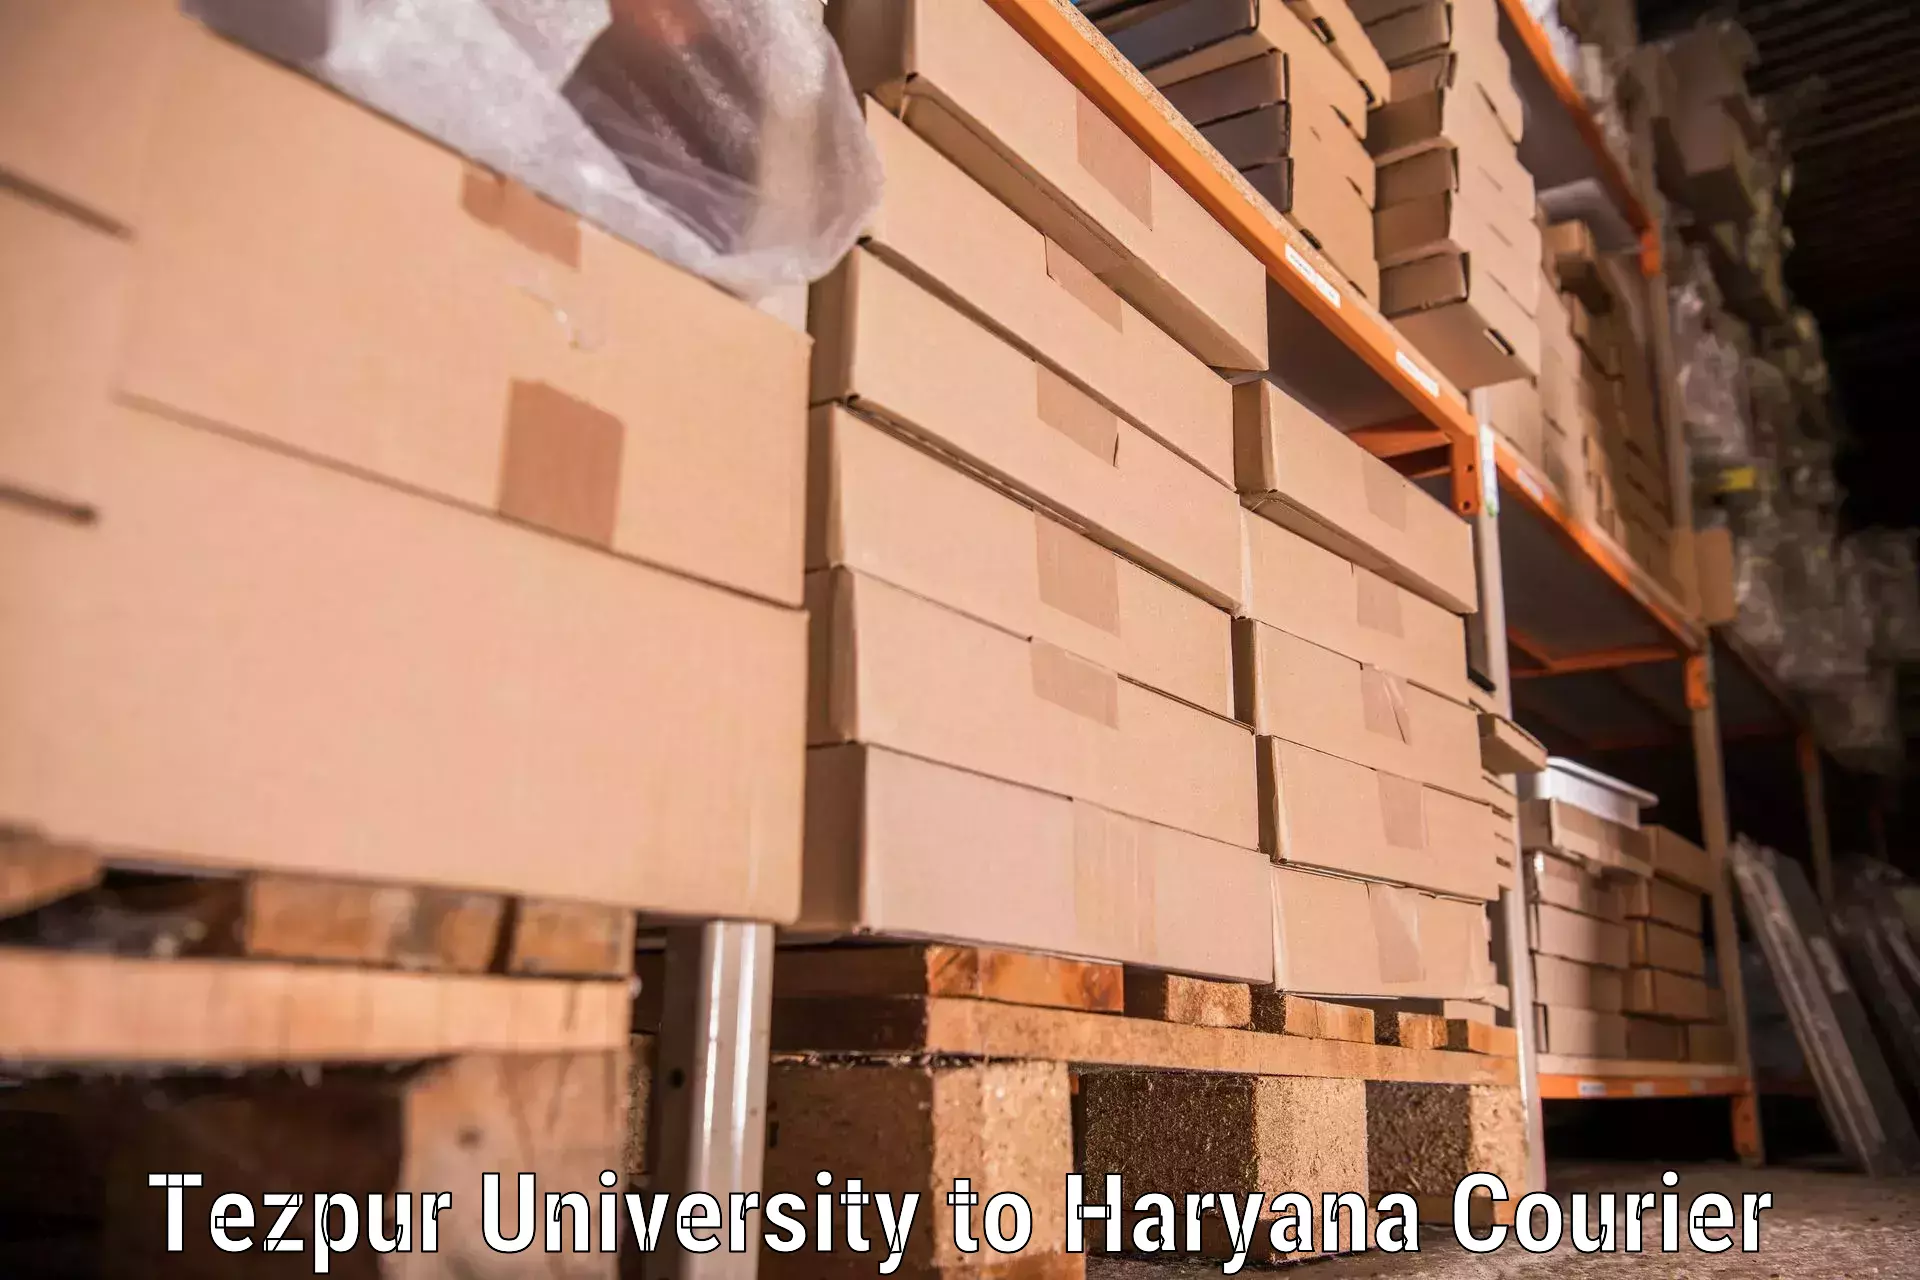 Home moving experts Tezpur University to Gurgaon